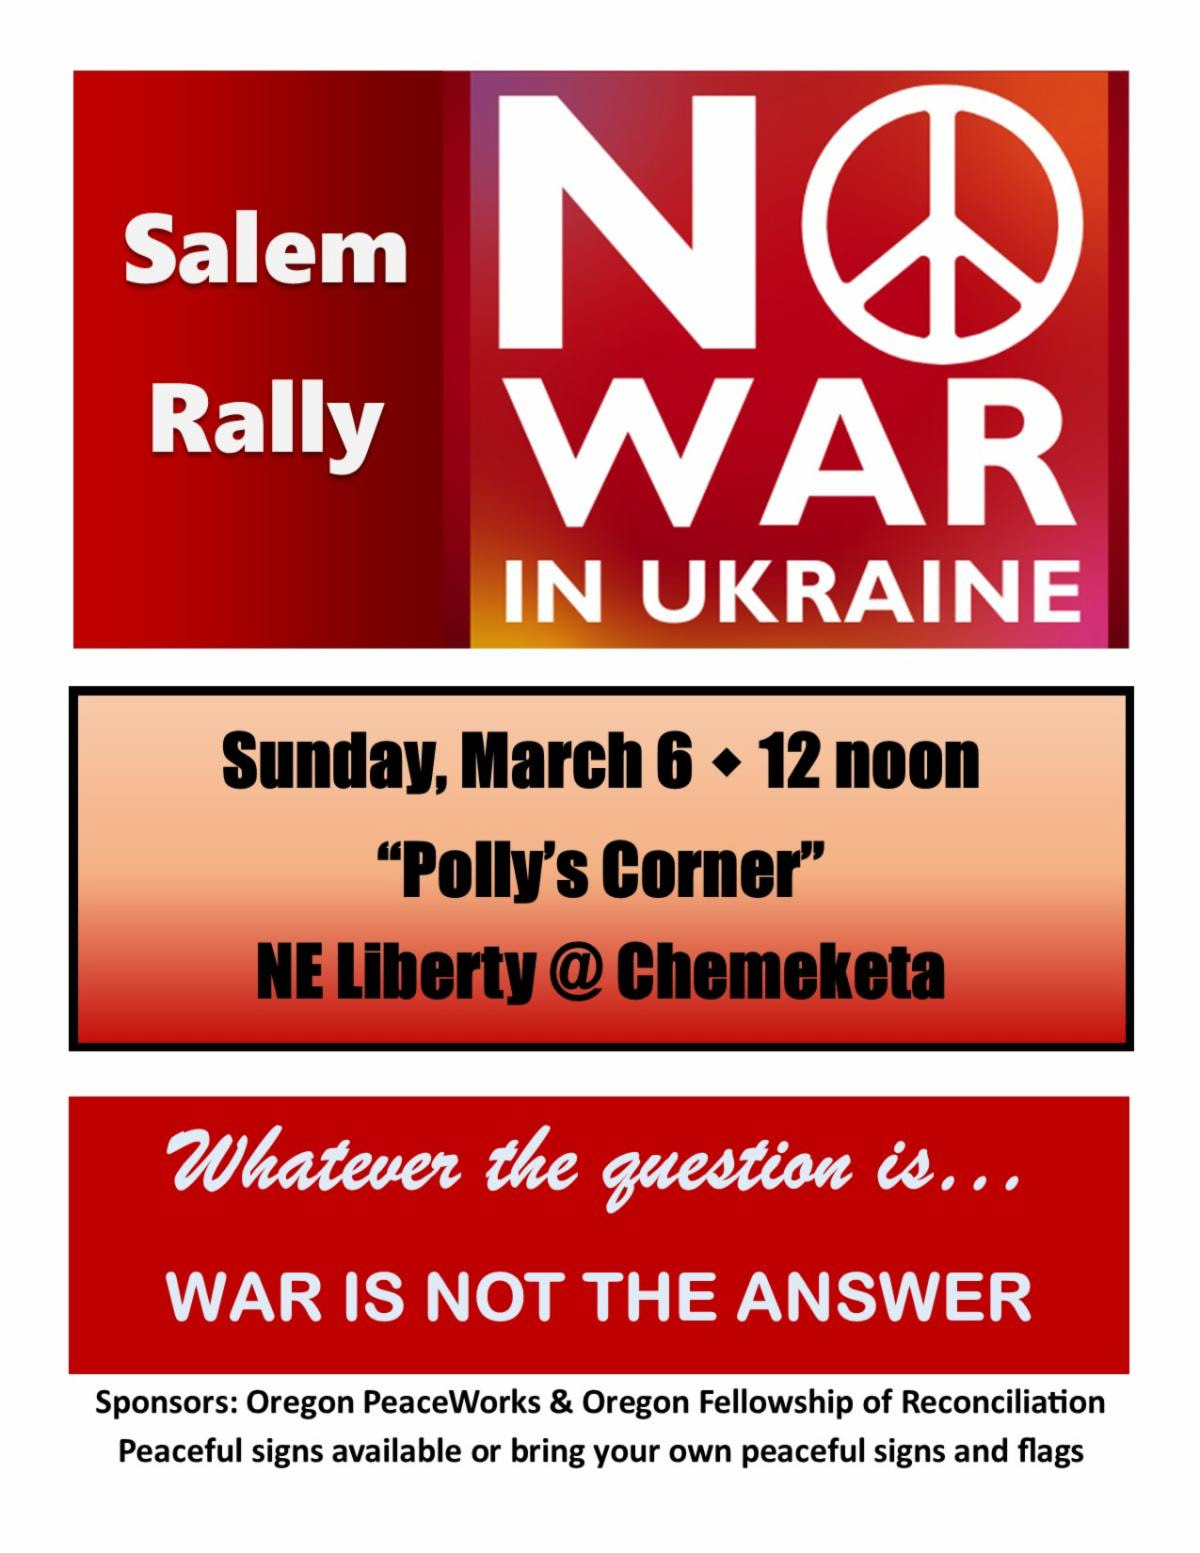 Không có chiến tranh ở Ukraine đồ họa cuộc biểu tình Salem. Dù câu hỏi là gì ... Chiến tranh không phải là câu trả lời